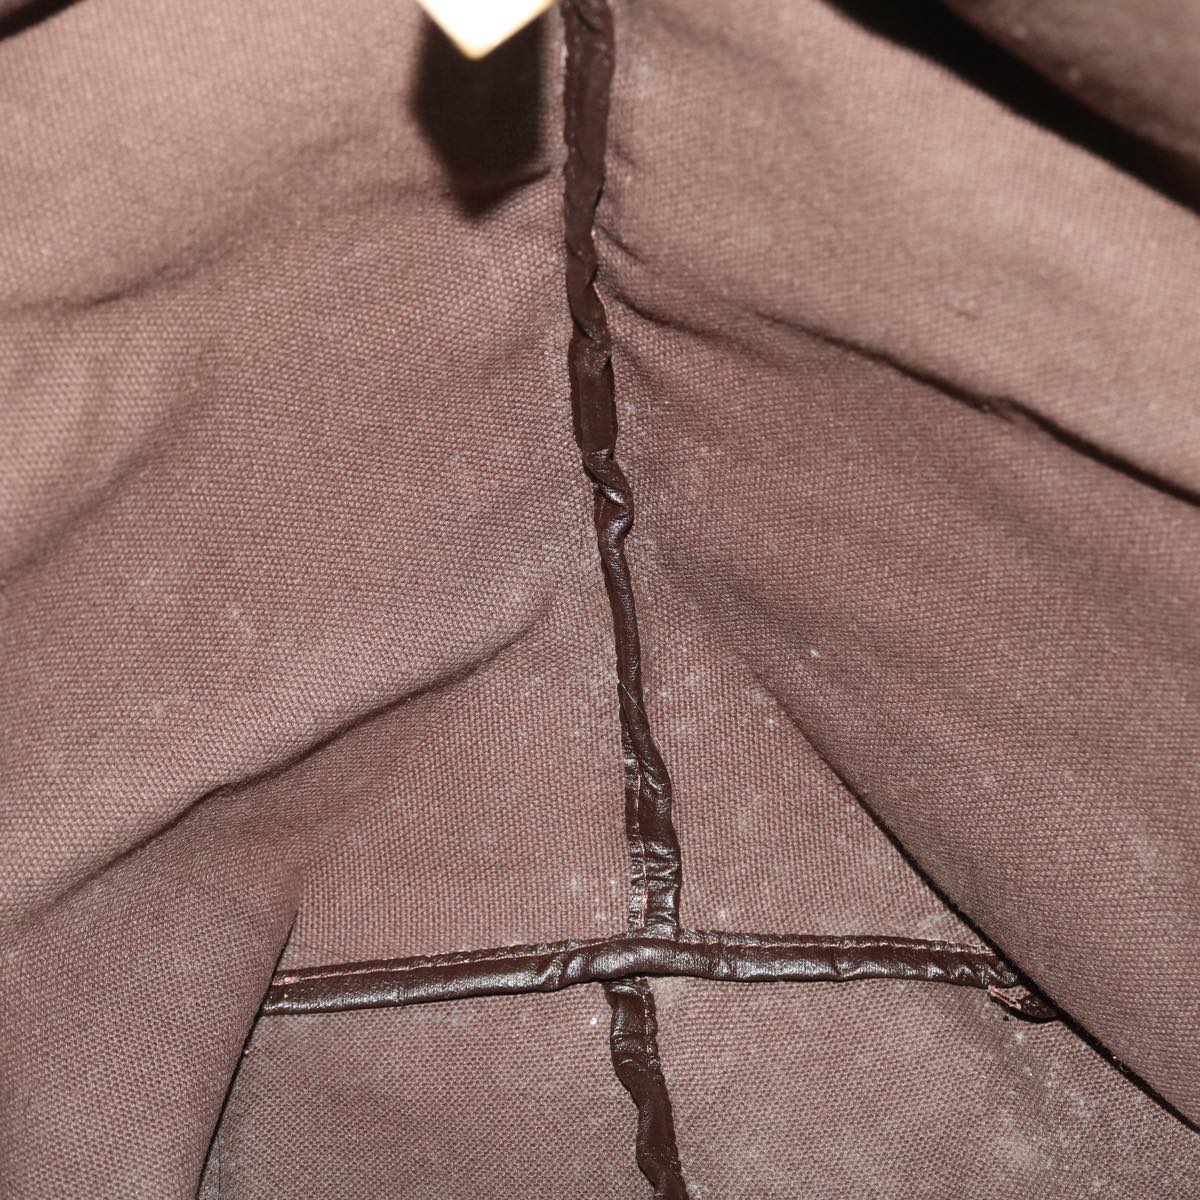 SAINT LAURENT Tote Bag PVC Leather Gray Auth bs7989